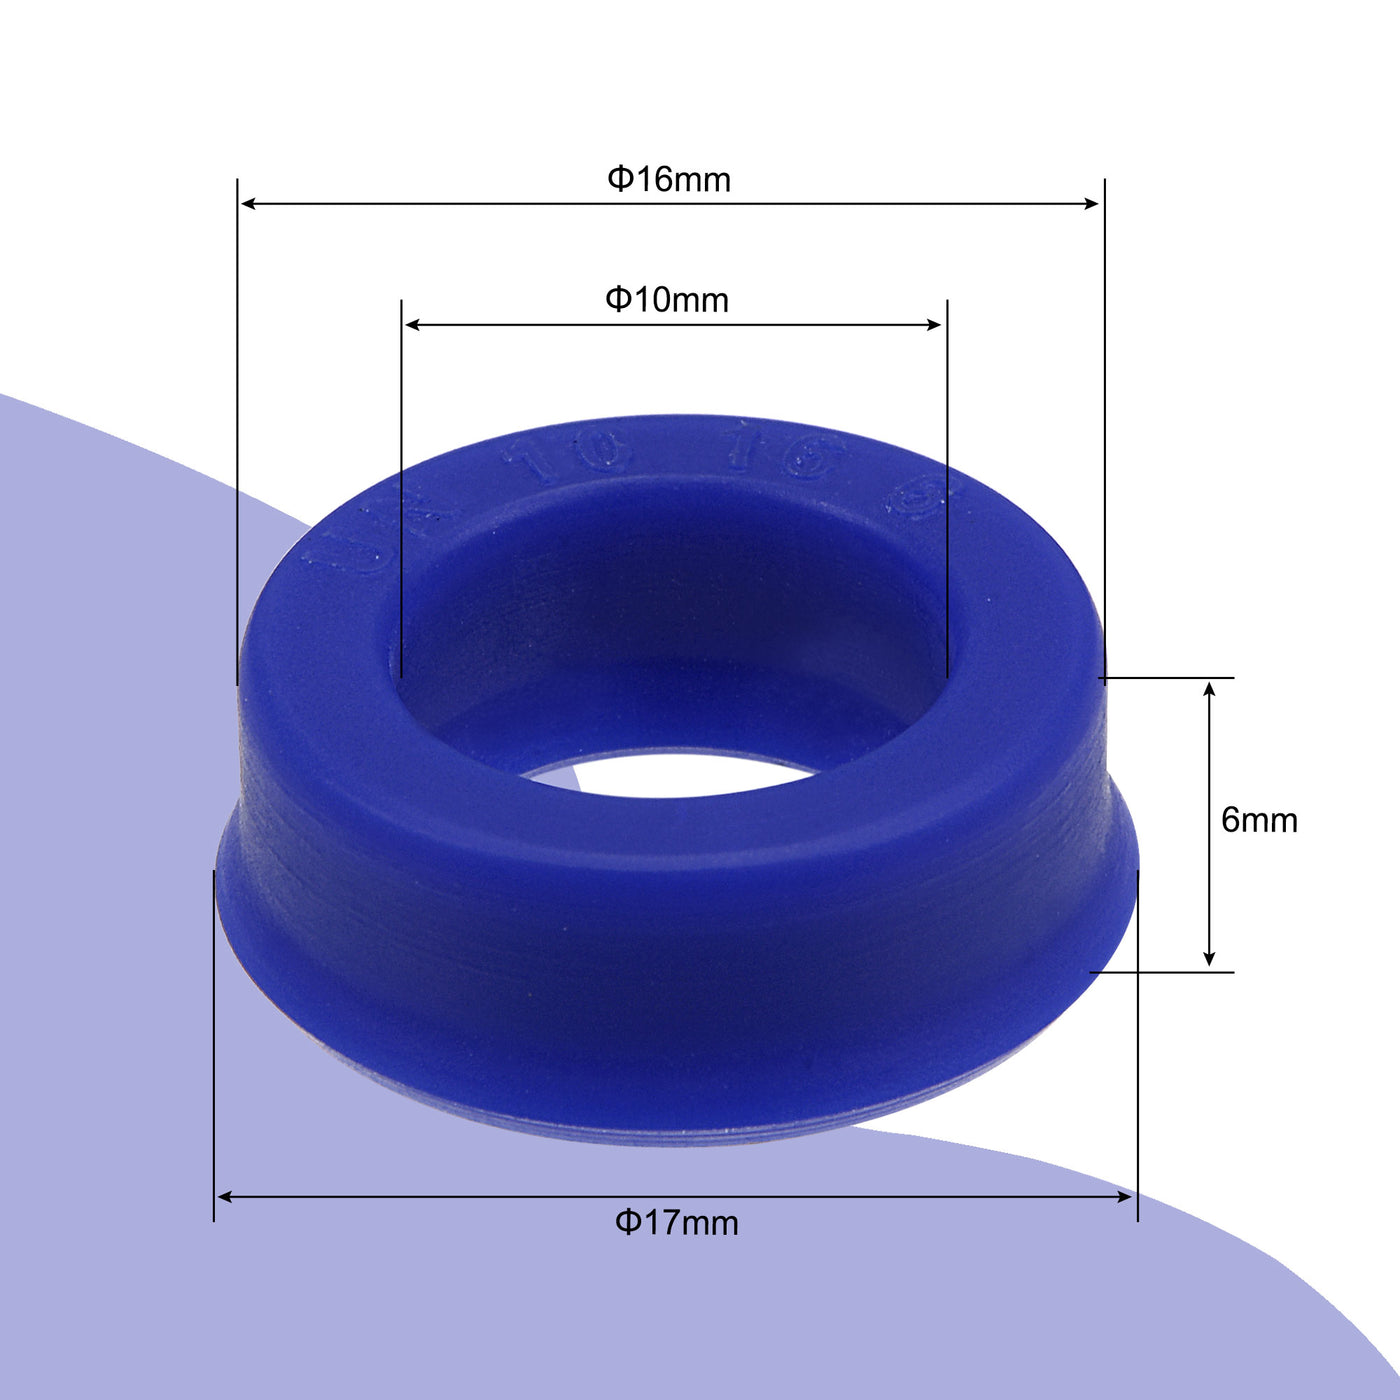 Harfington UN Radial Shaft Seal 10mm ID x 16mm OD x 6mm Width PU Oil Seal, Blue